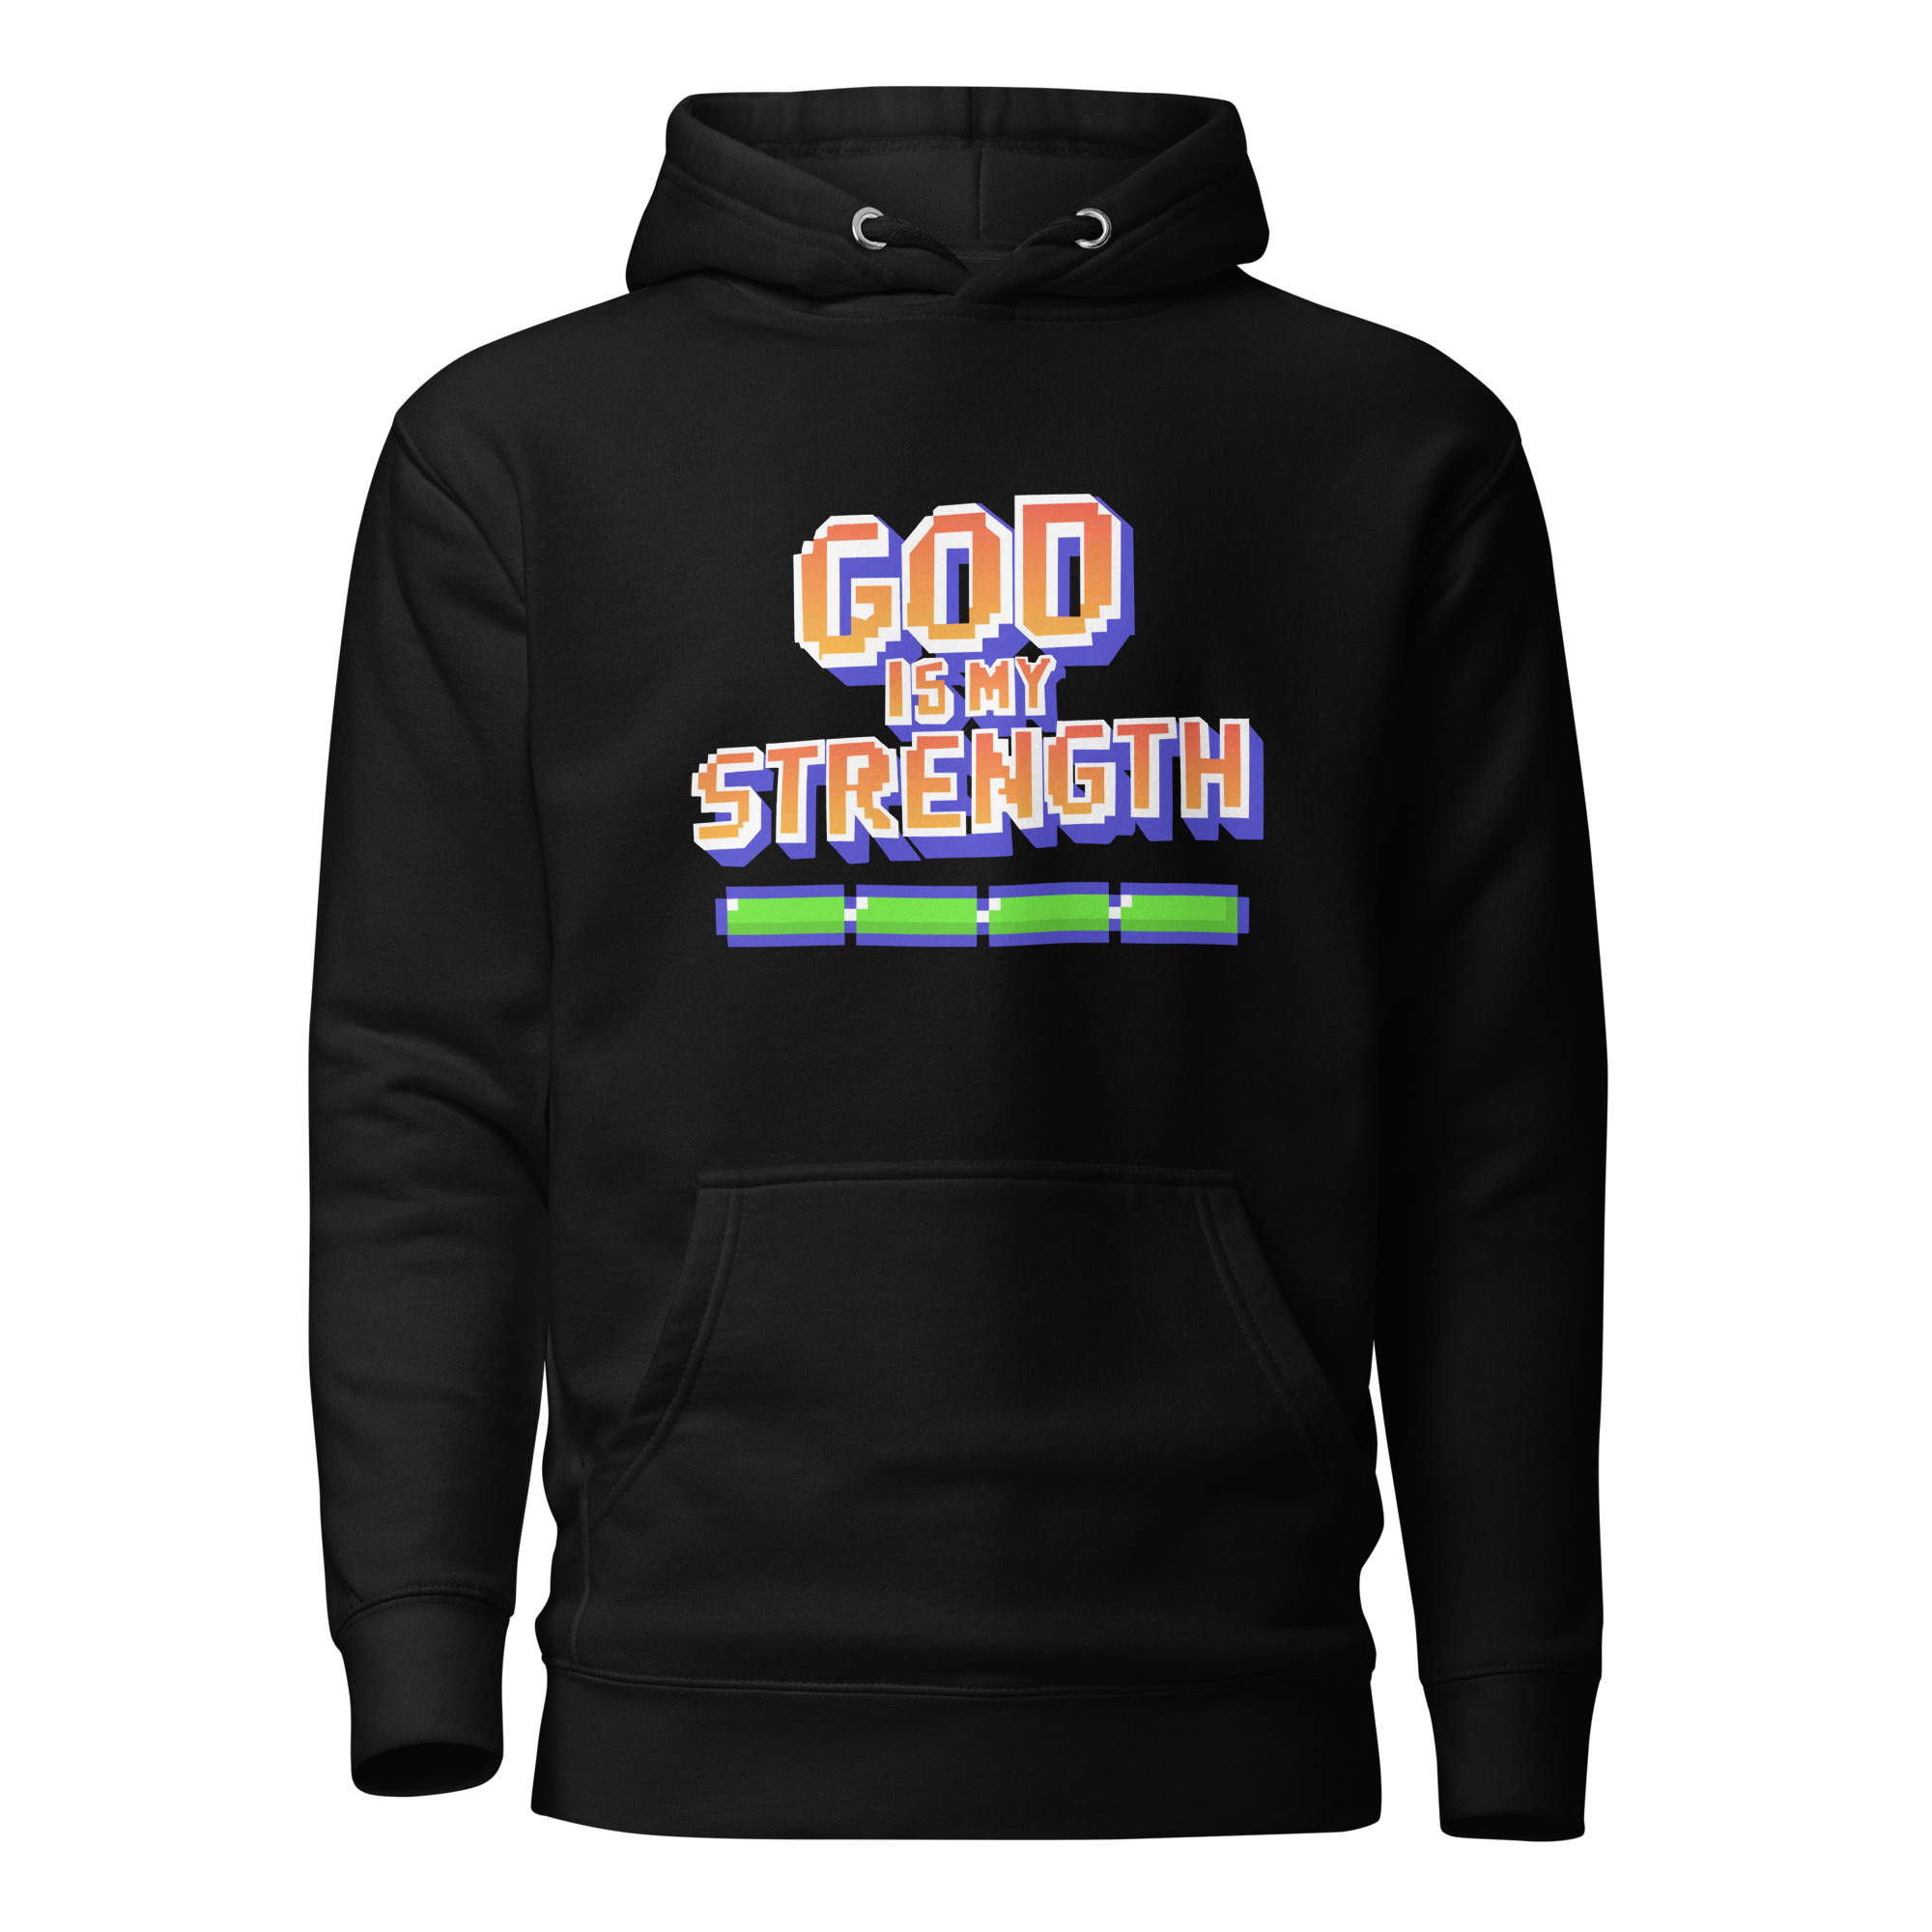 God is my Strength Hoodie - Black / M